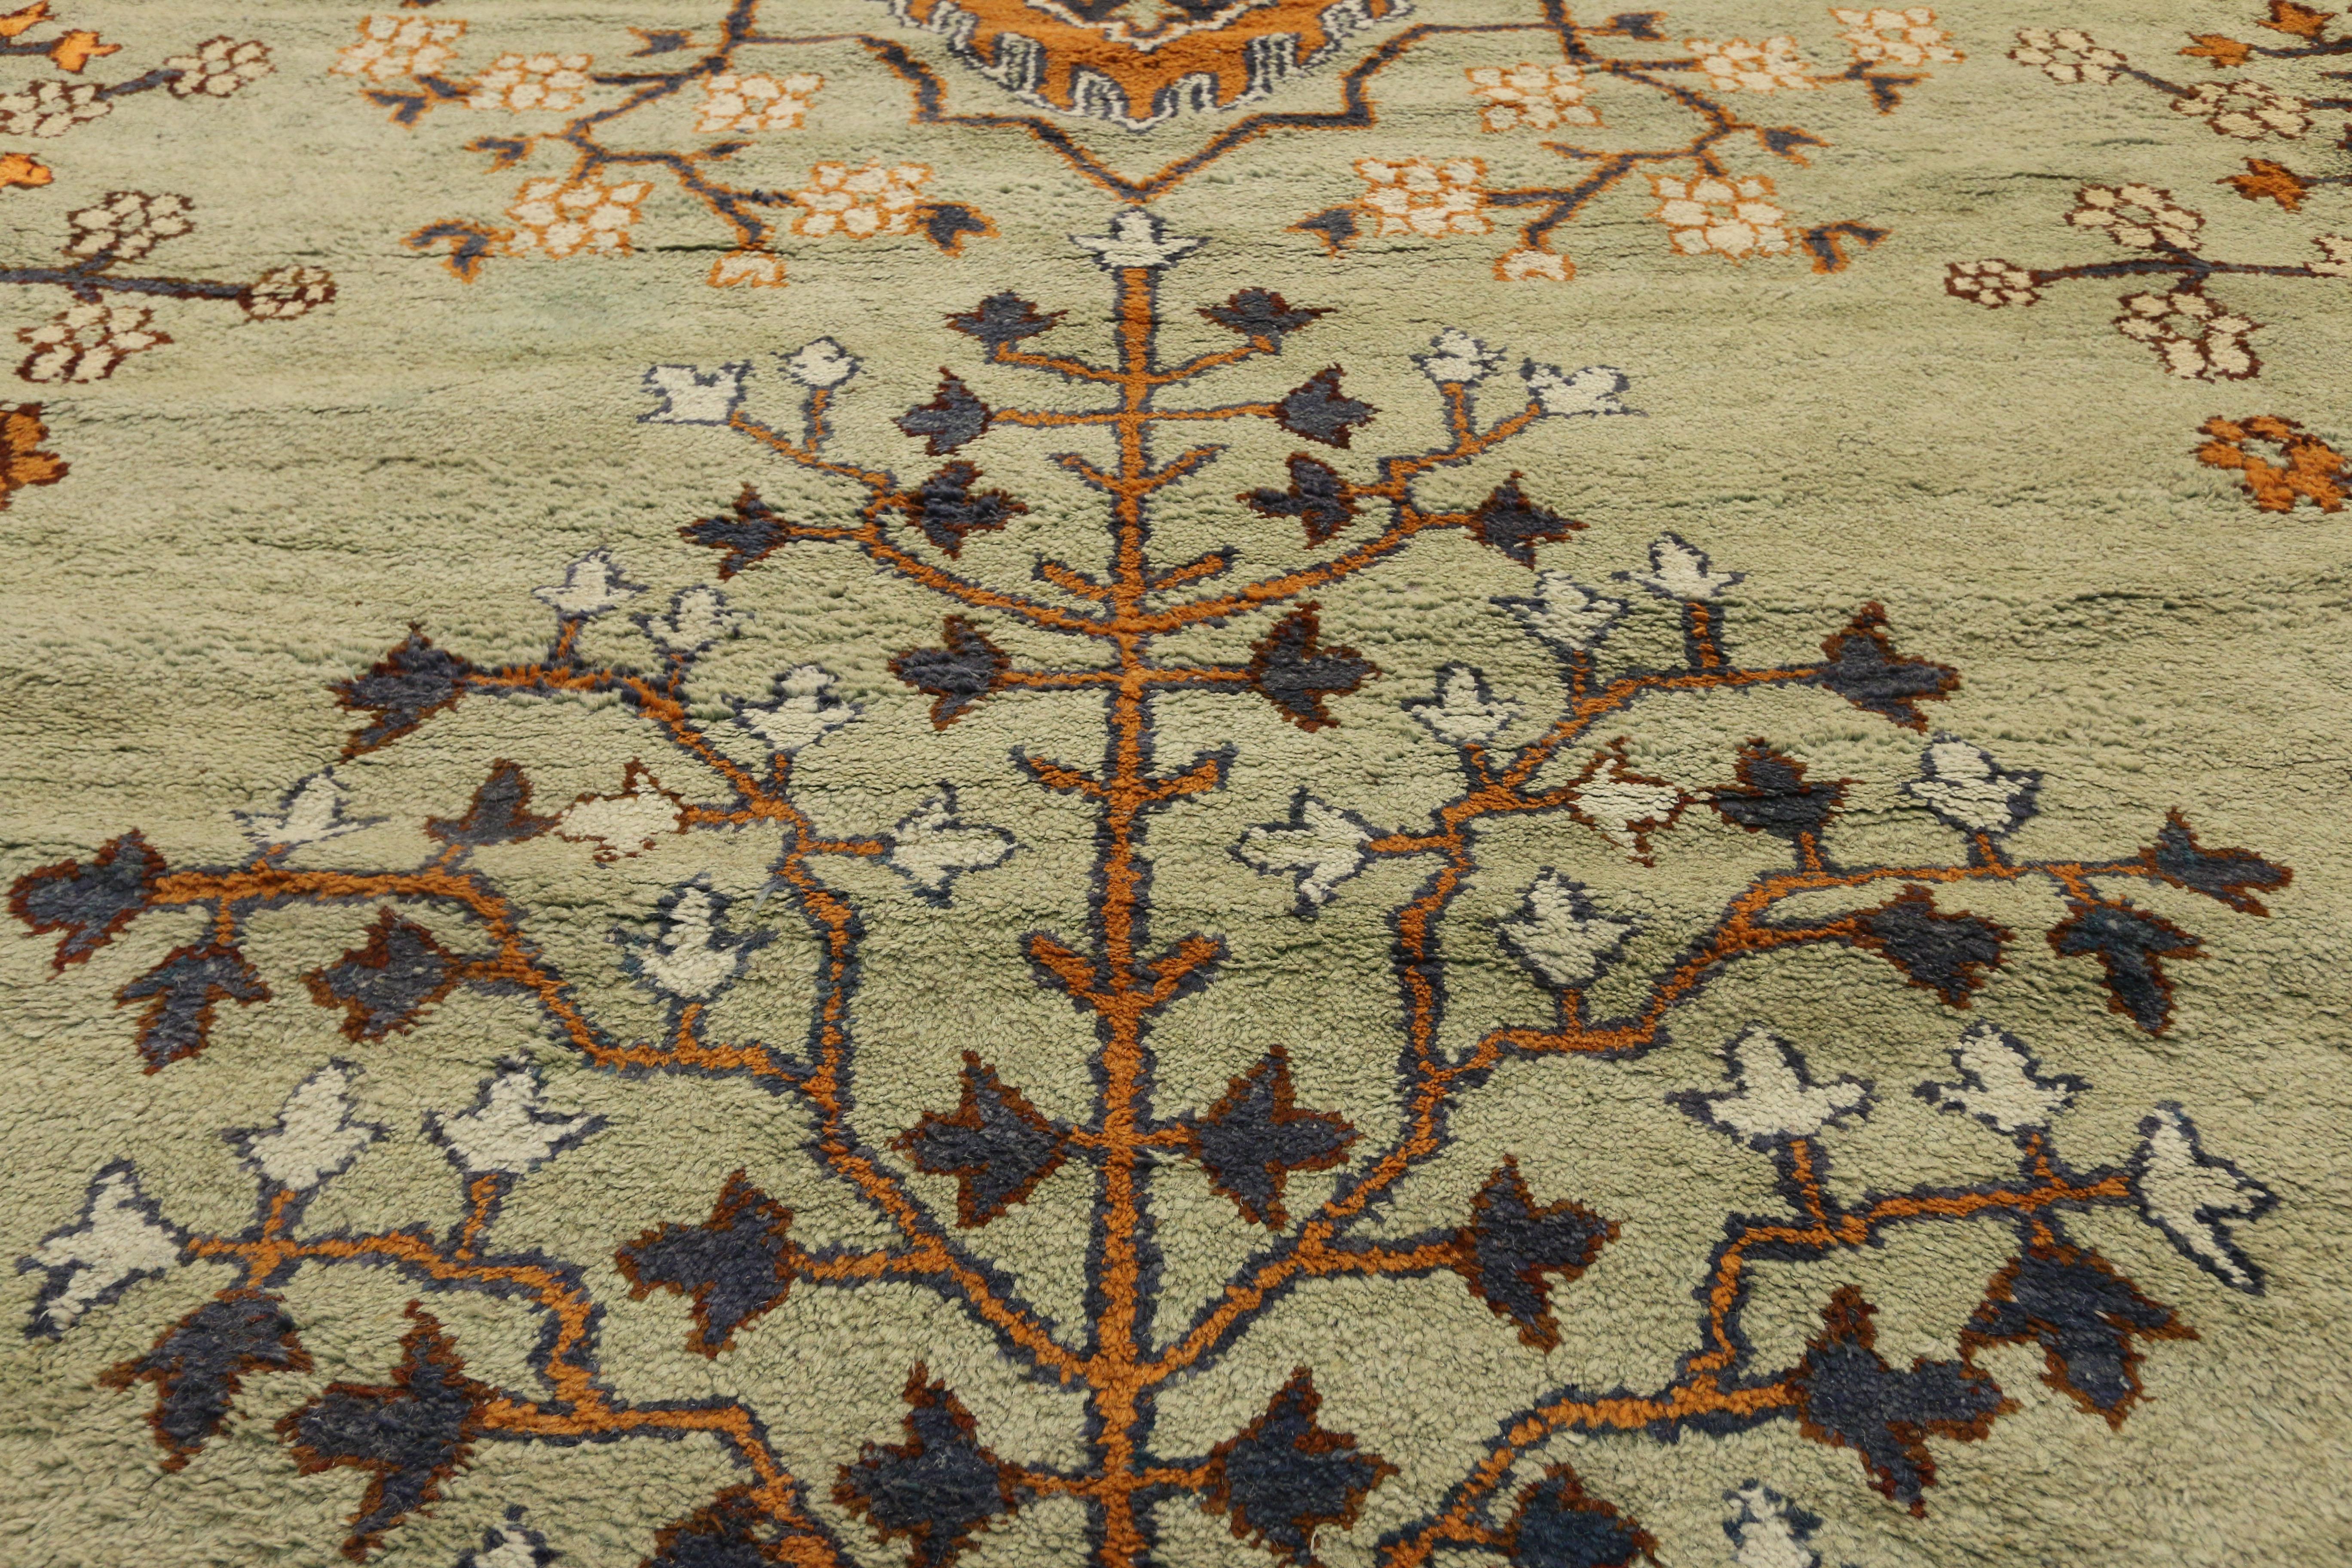 72173 Tapis ancien indien de taille palais d'Agra avec arbre de vie en saule pleureur. À la fin du XIXe siècle, Agra a commencé à produire des tapis de style persan en laine ou en soie commandés par des entreprises britanniques et européennes. Cette